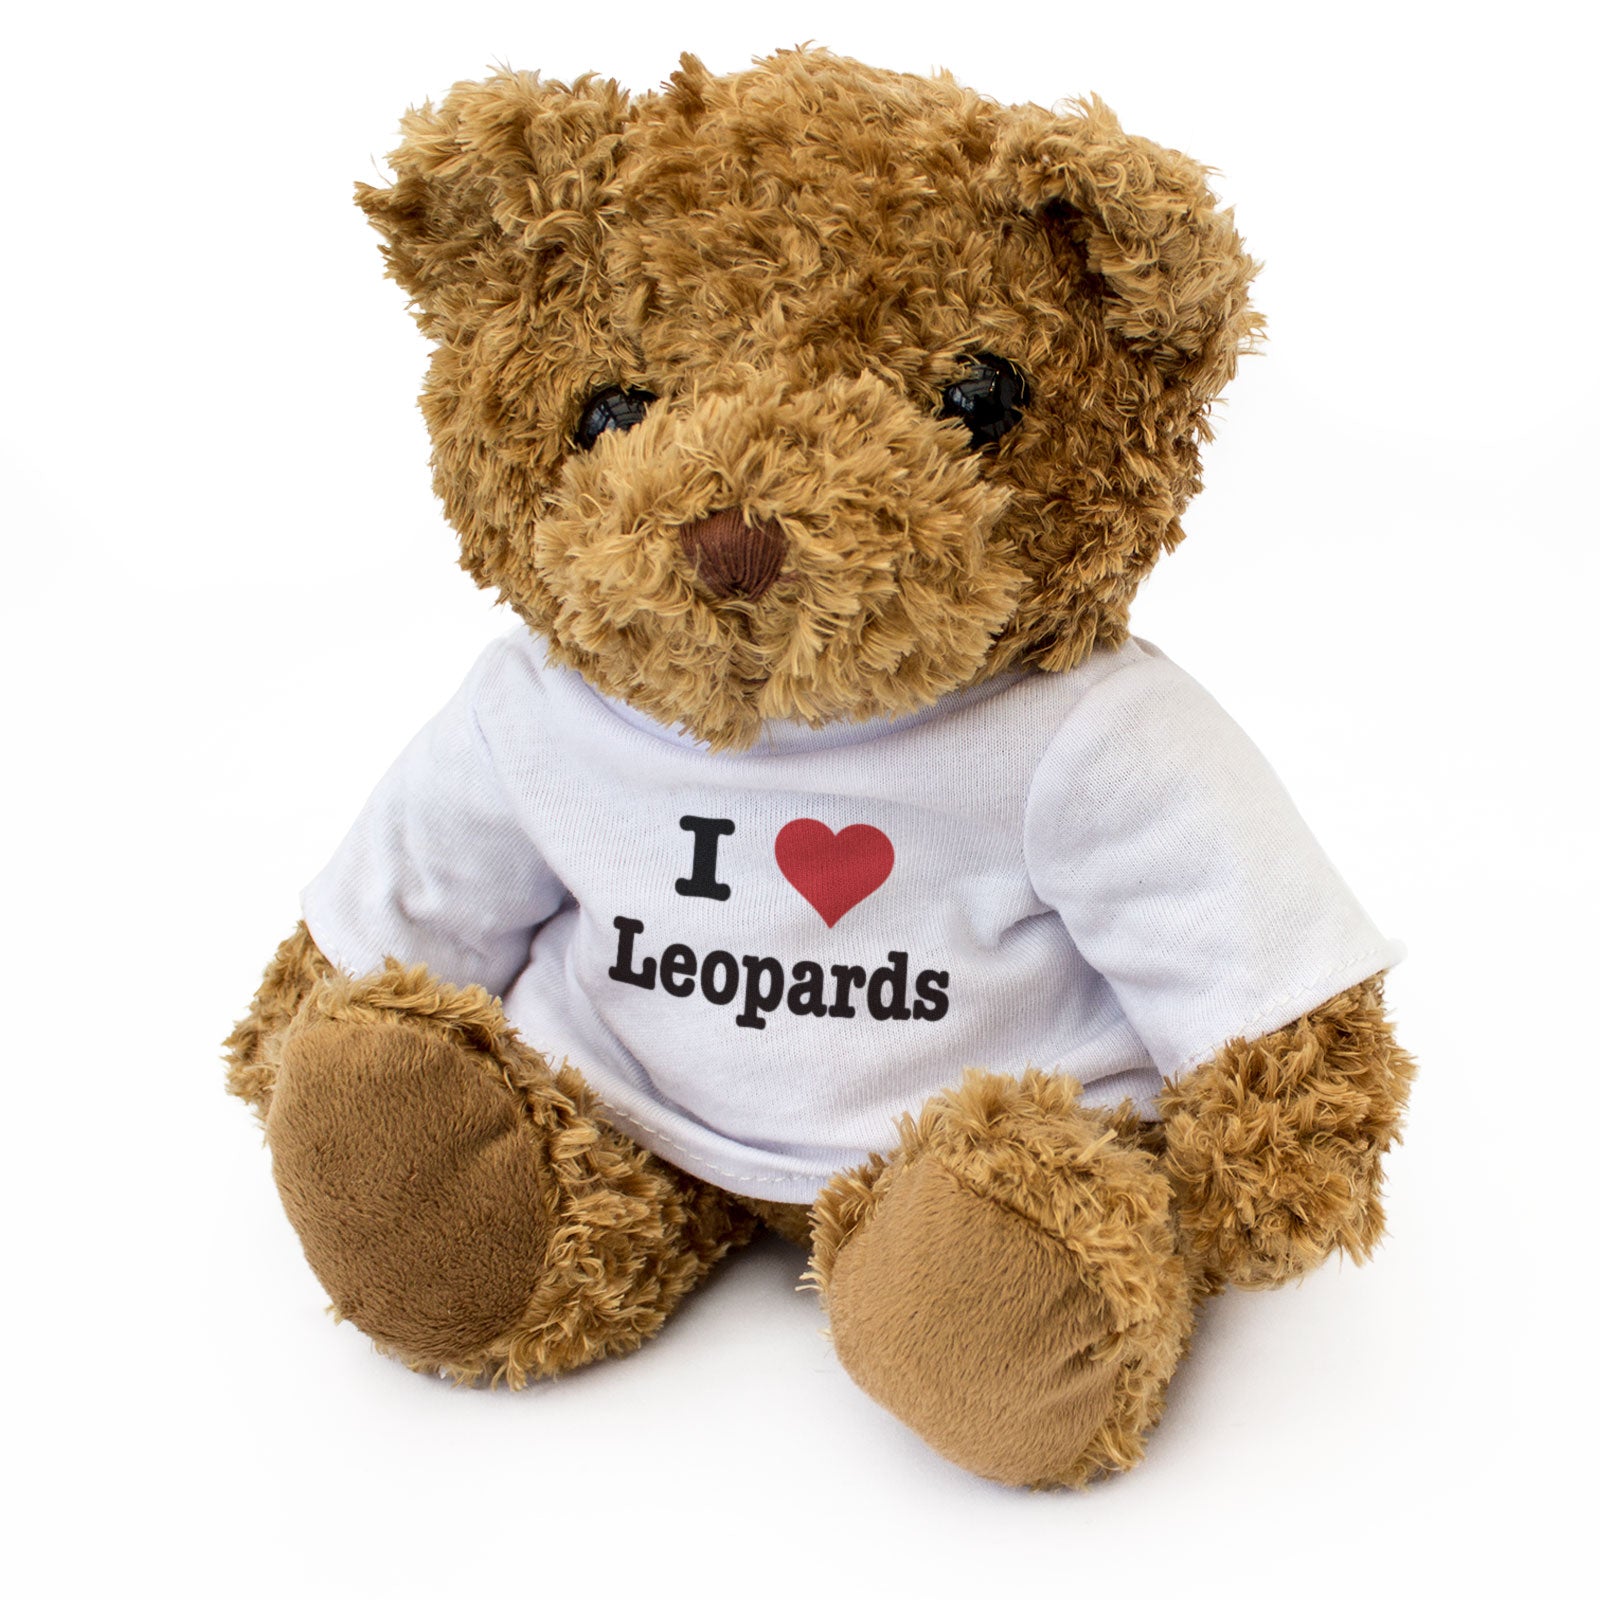 I Love Leopards - Teddy Bear